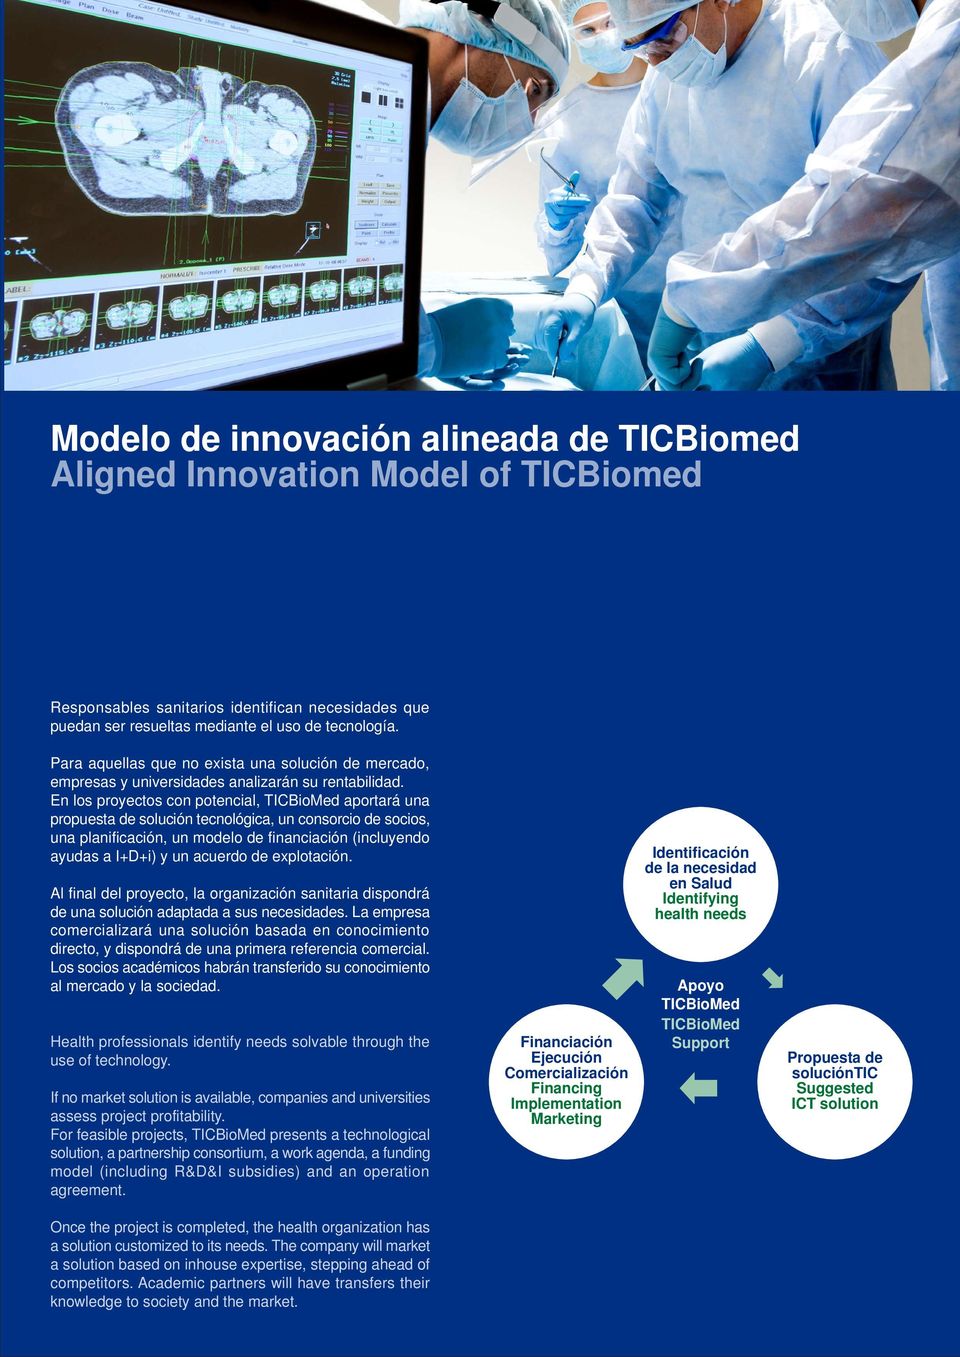 En los proyectos con potencial, TICBioMed aportará una propuesta de solución tecnológica, un consorcio de socios, una planificación, un modelo de financiación (incluyendo ayudas a I+D+i) y un acuerdo